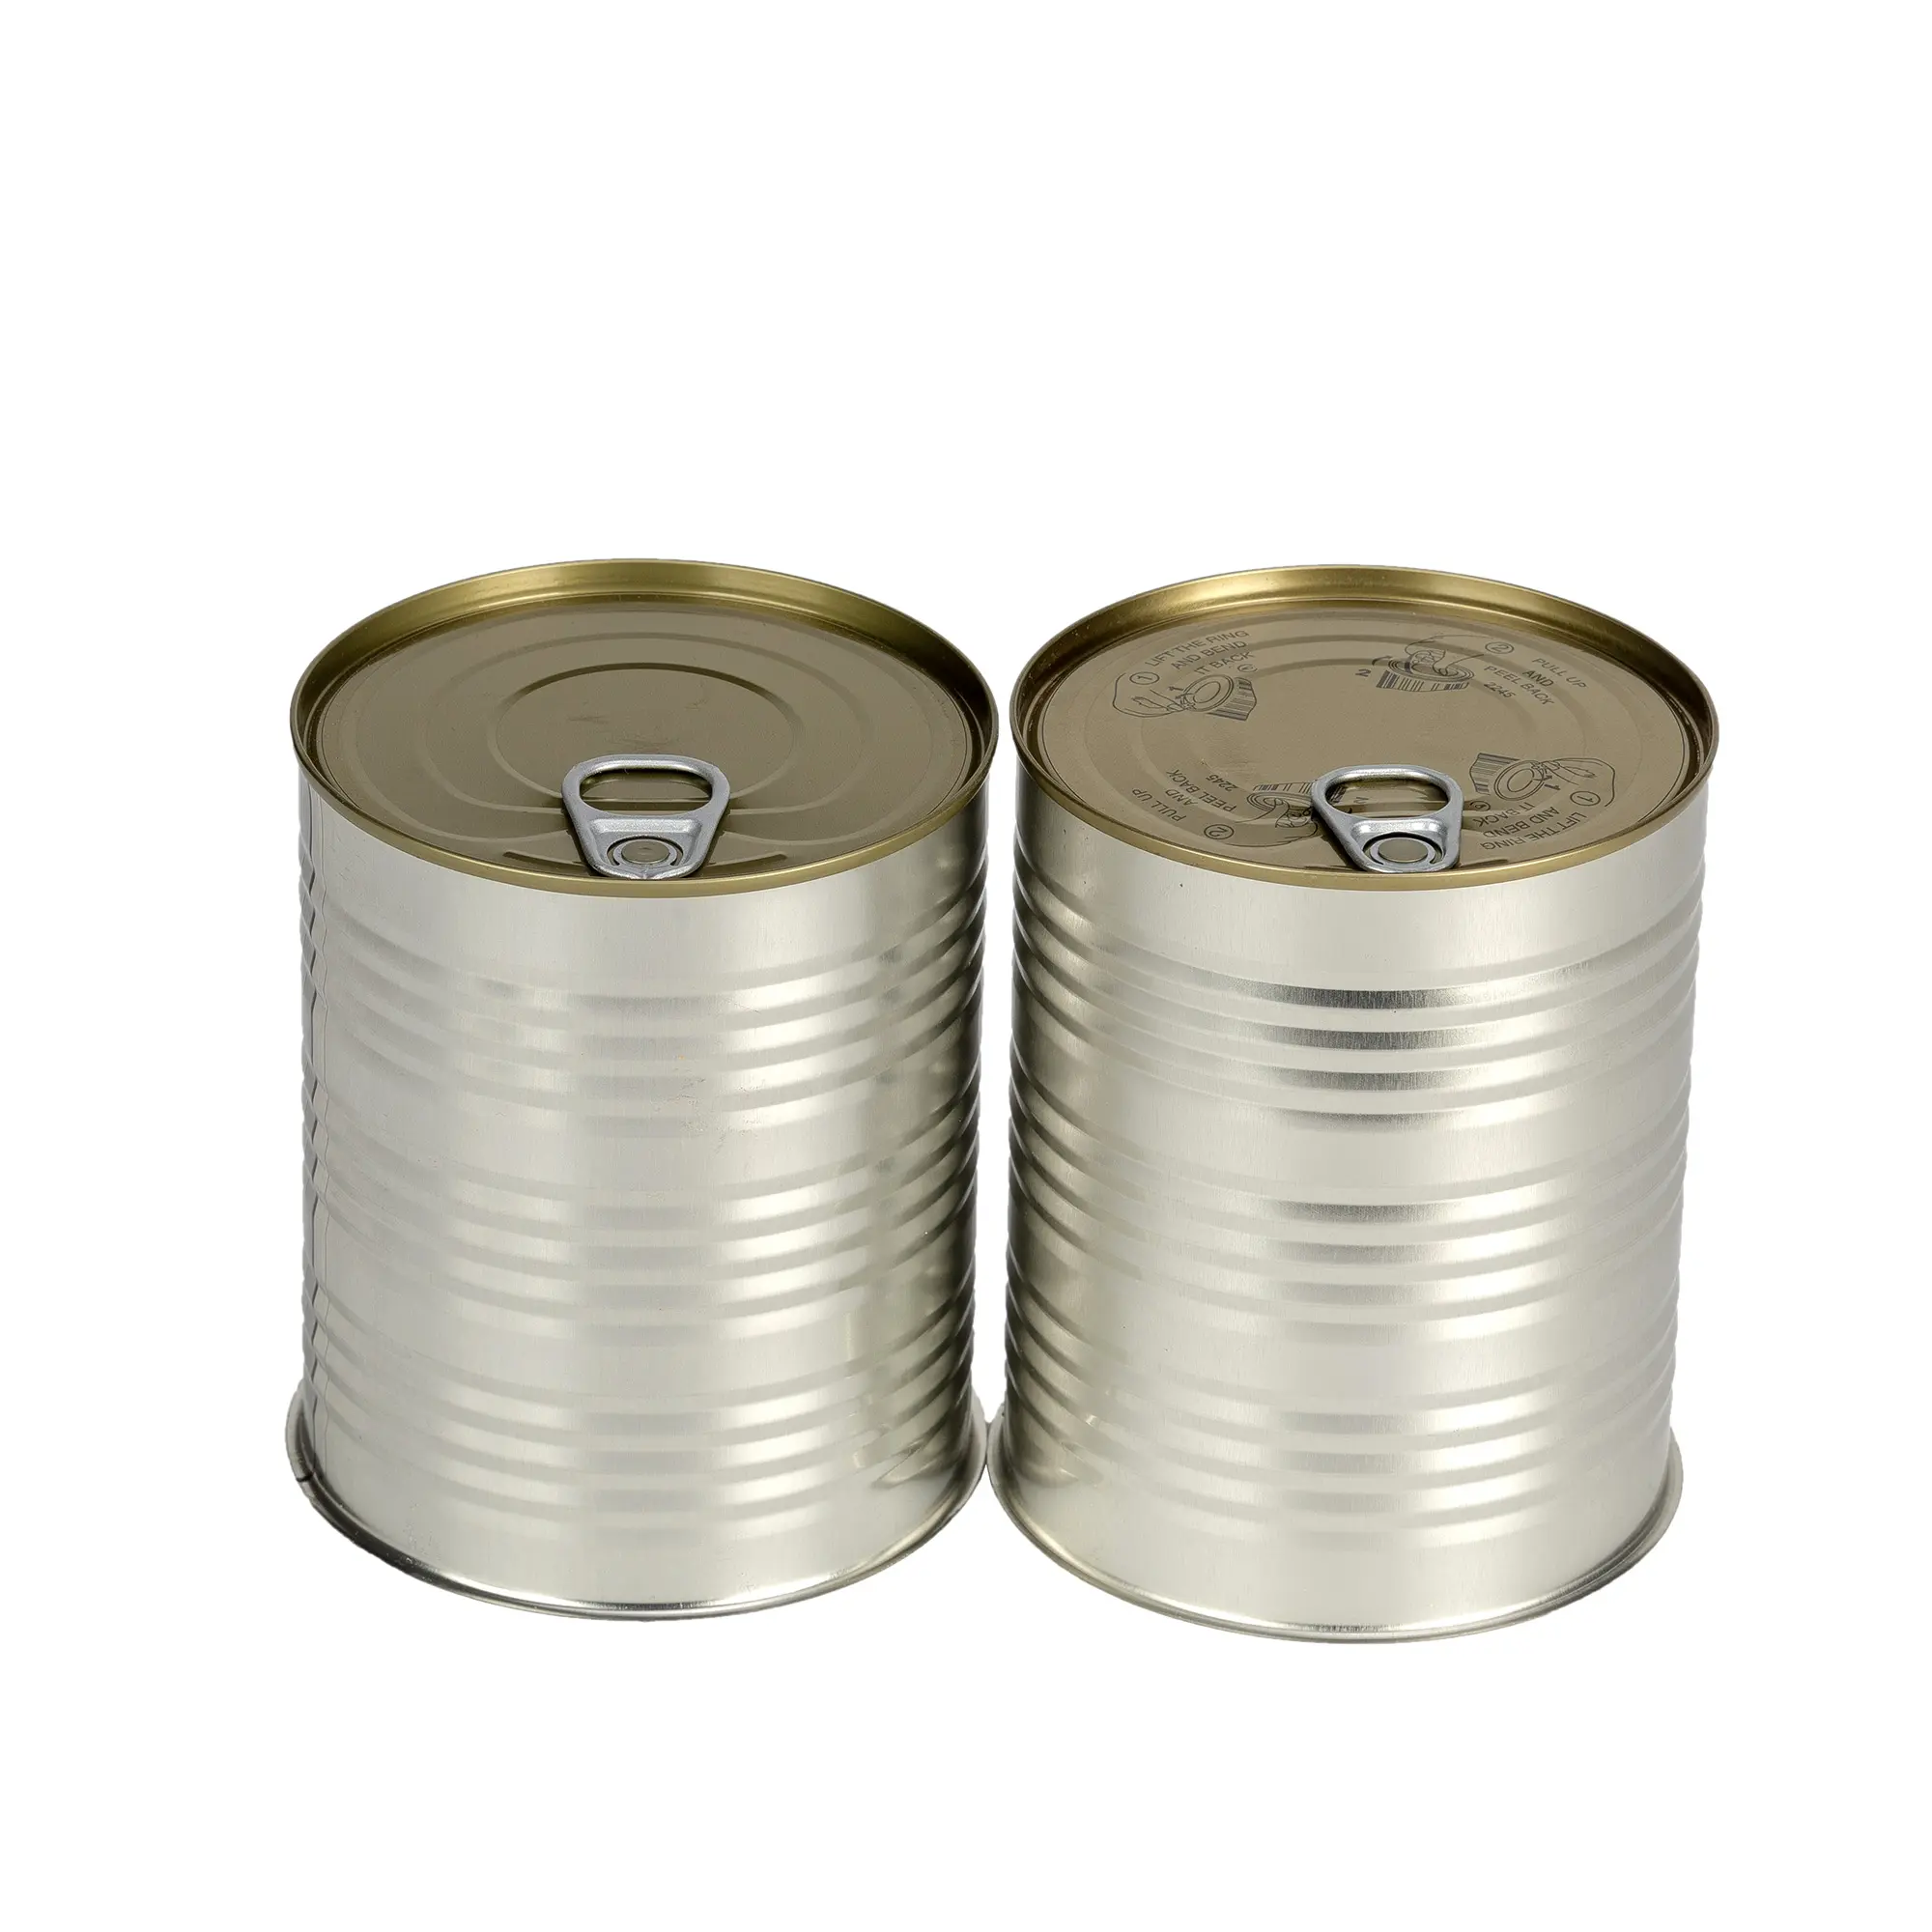 Lata de hojalata de metal de grado alimenticio, lata de lata vacía con tapa de fácil apertura para embalaje de alimentos enlatados